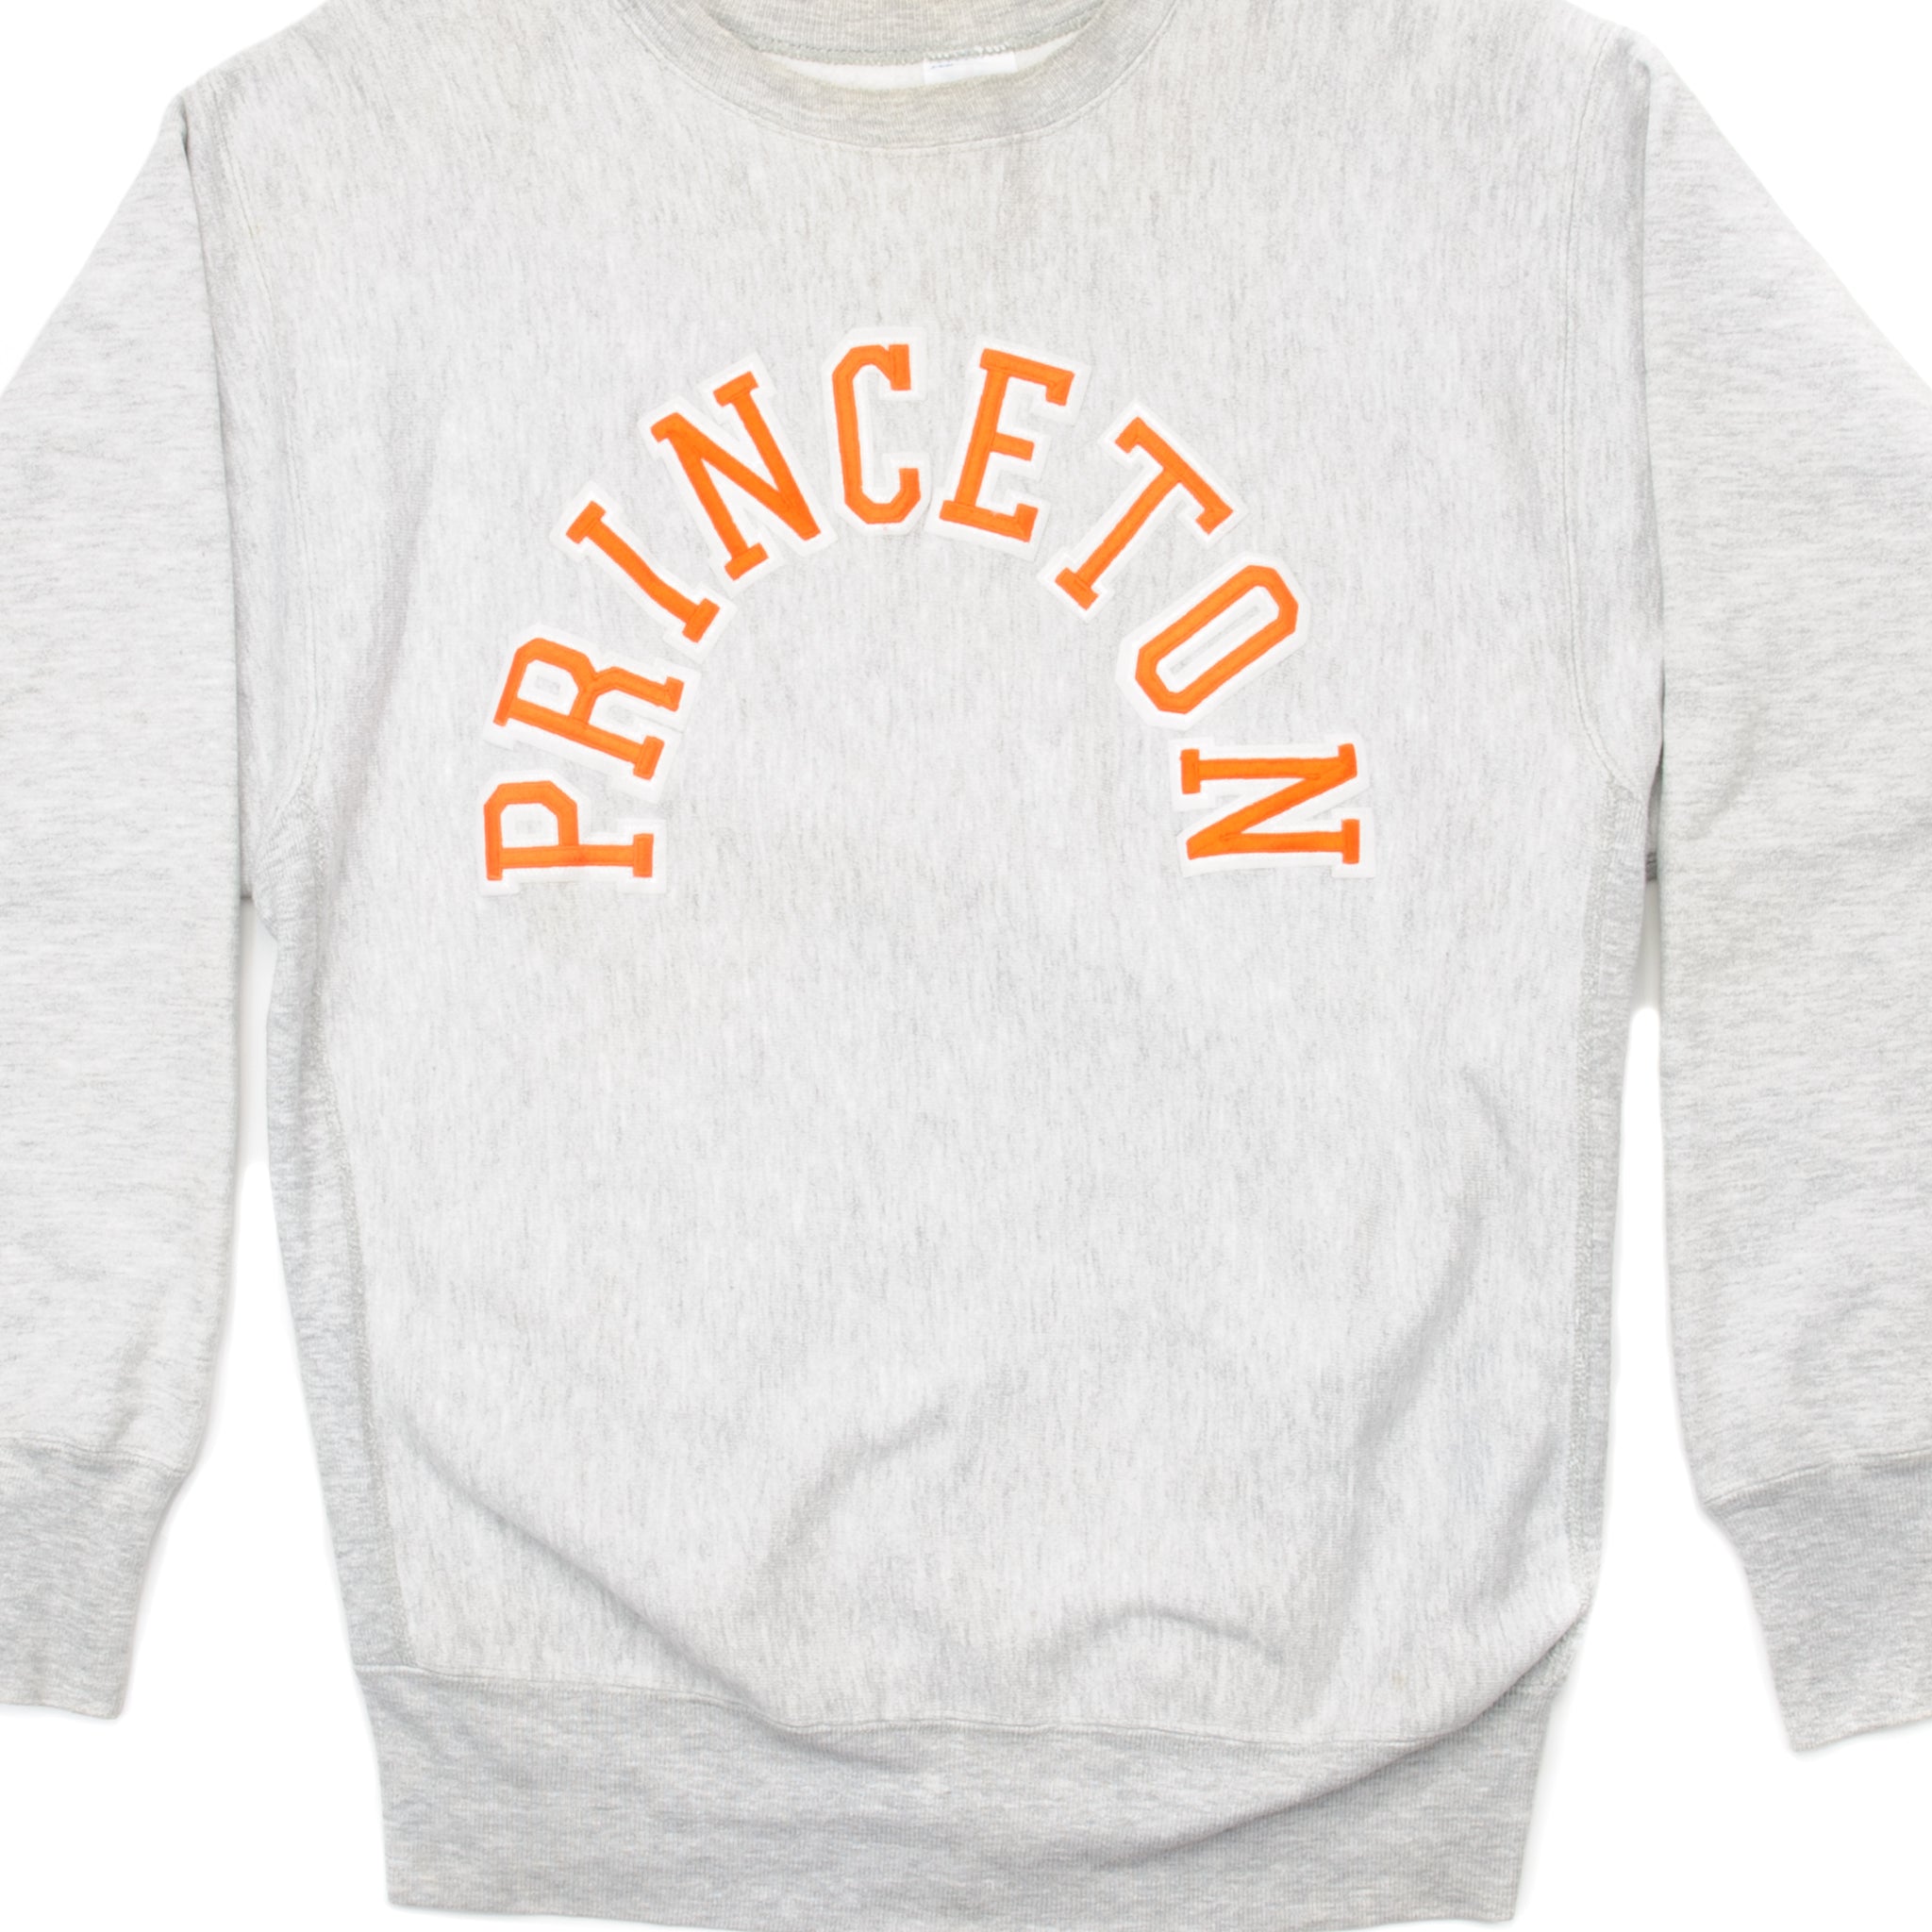 【最終値下げ】90s reverse weave Princeton